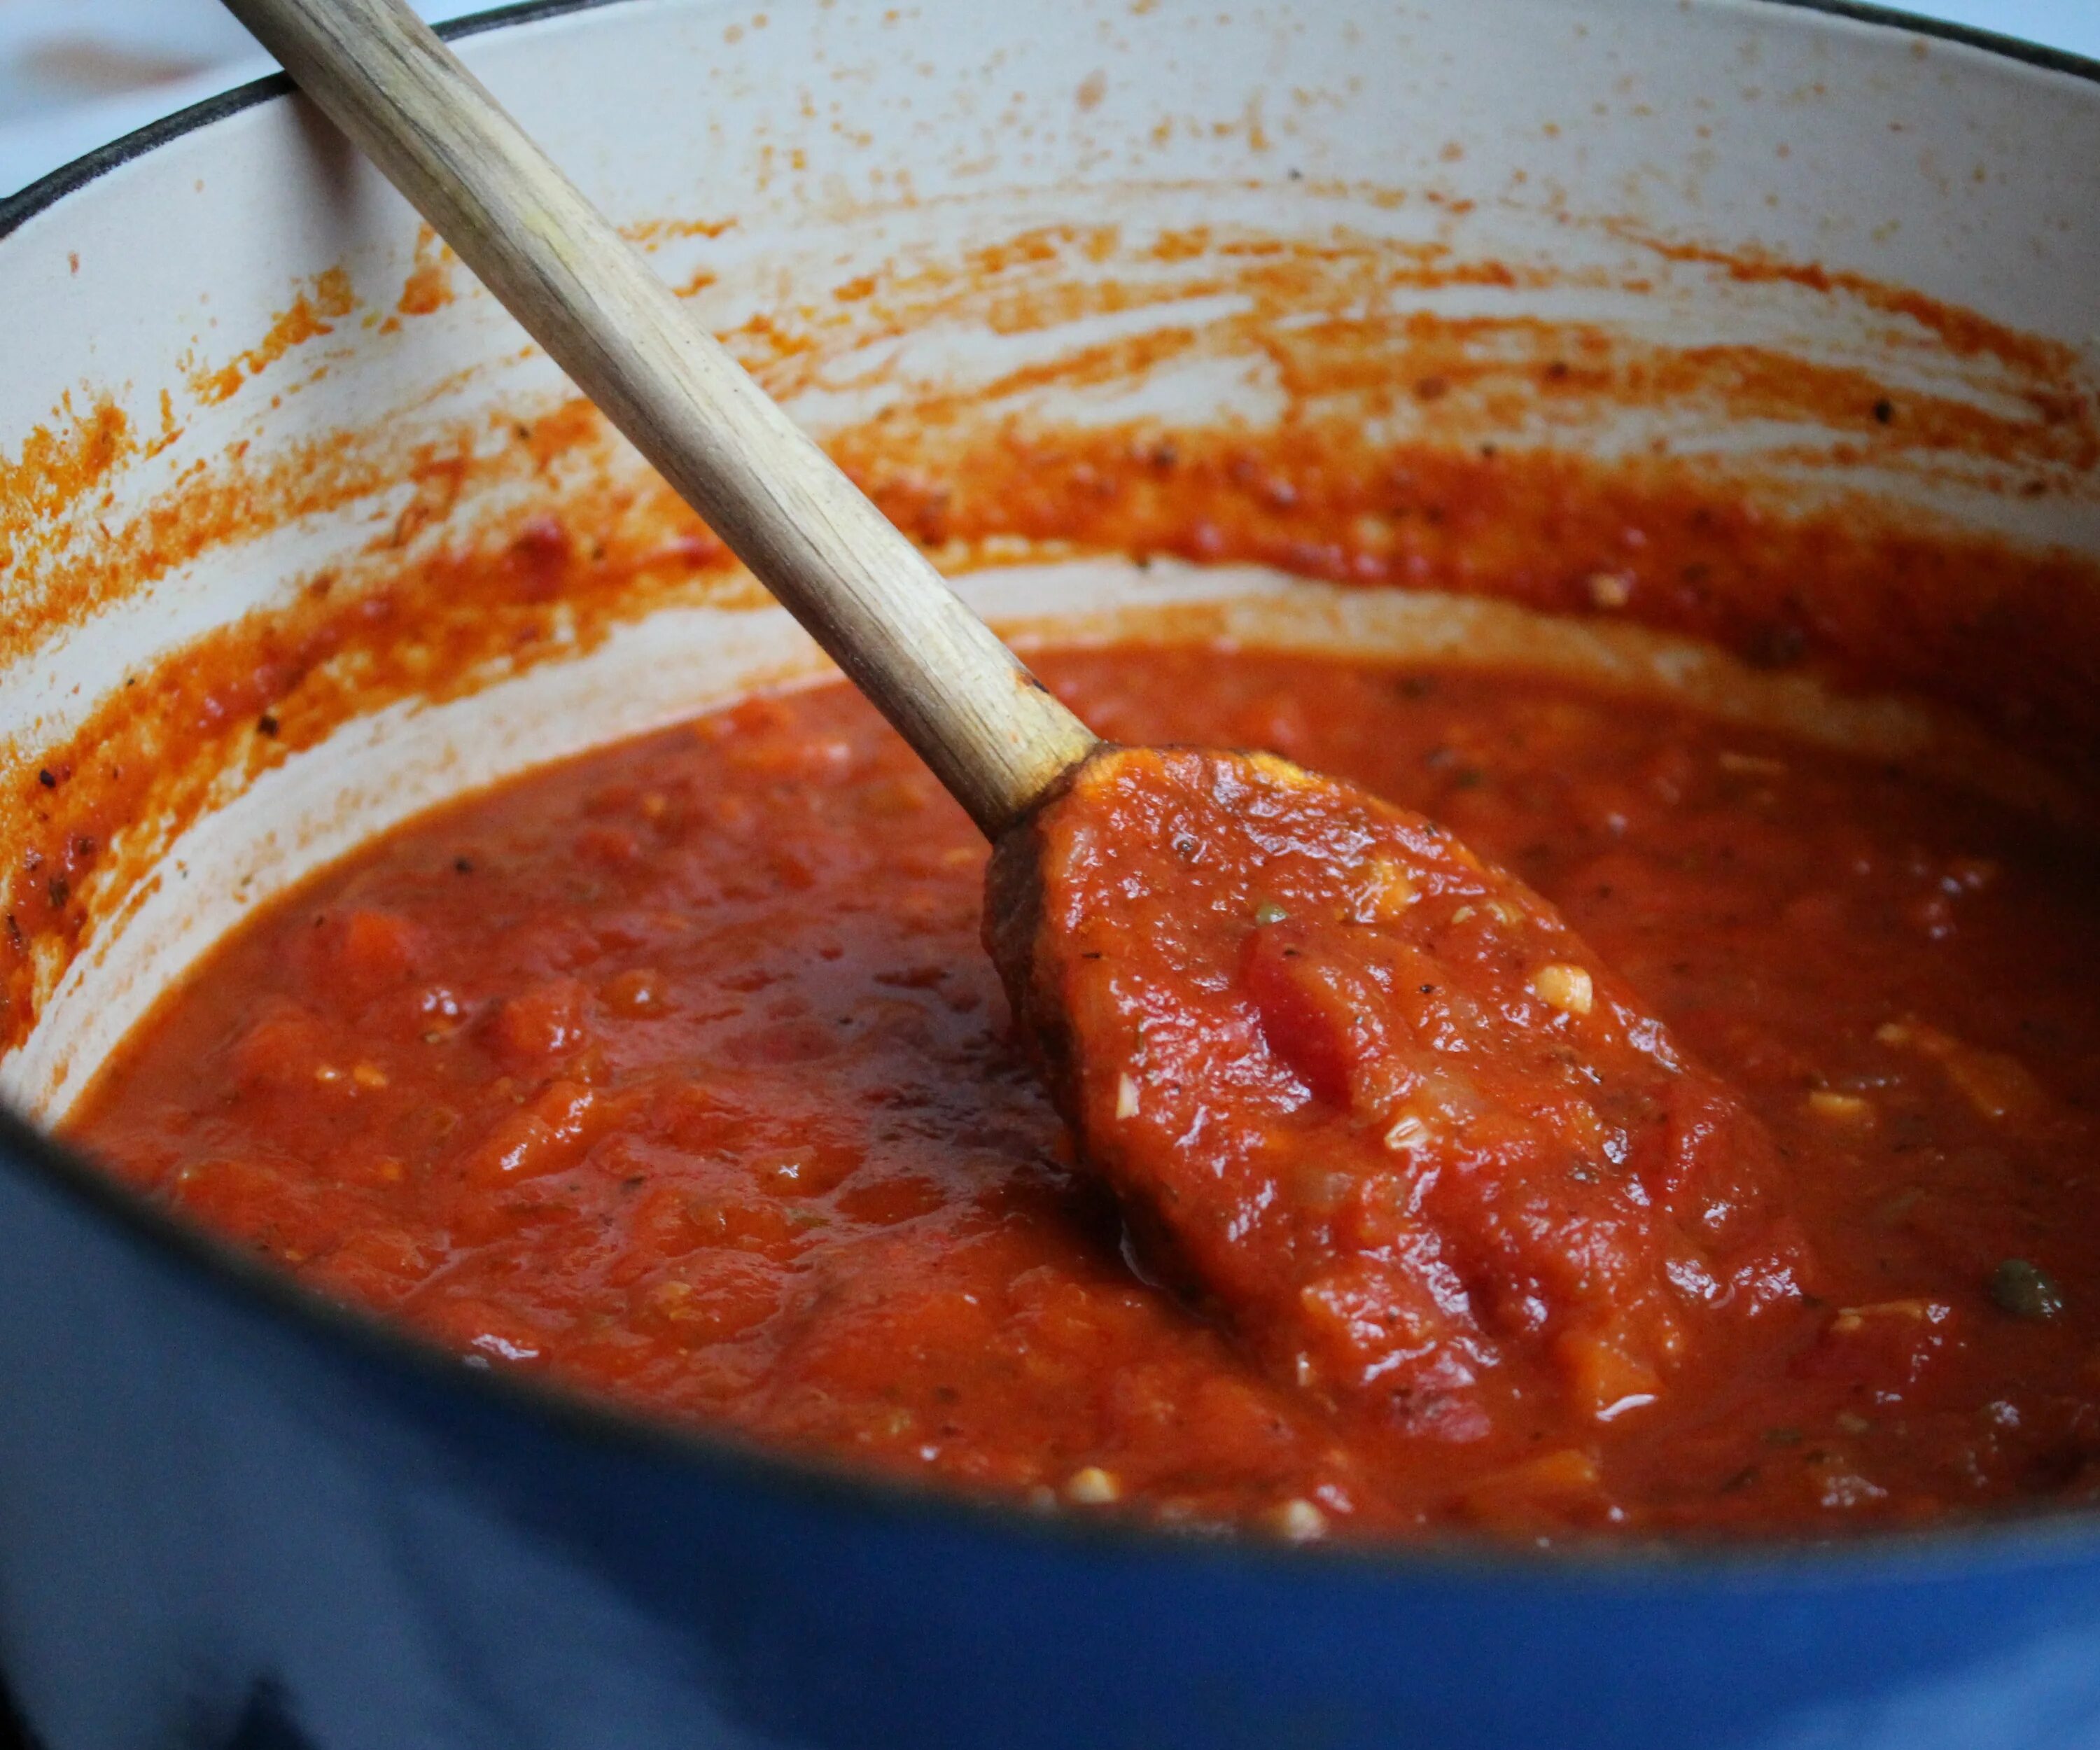 Томатный соус "Чемергес". Подлива. Вкусная томатная подлива. Паста с сельдереем в томатном соусе.